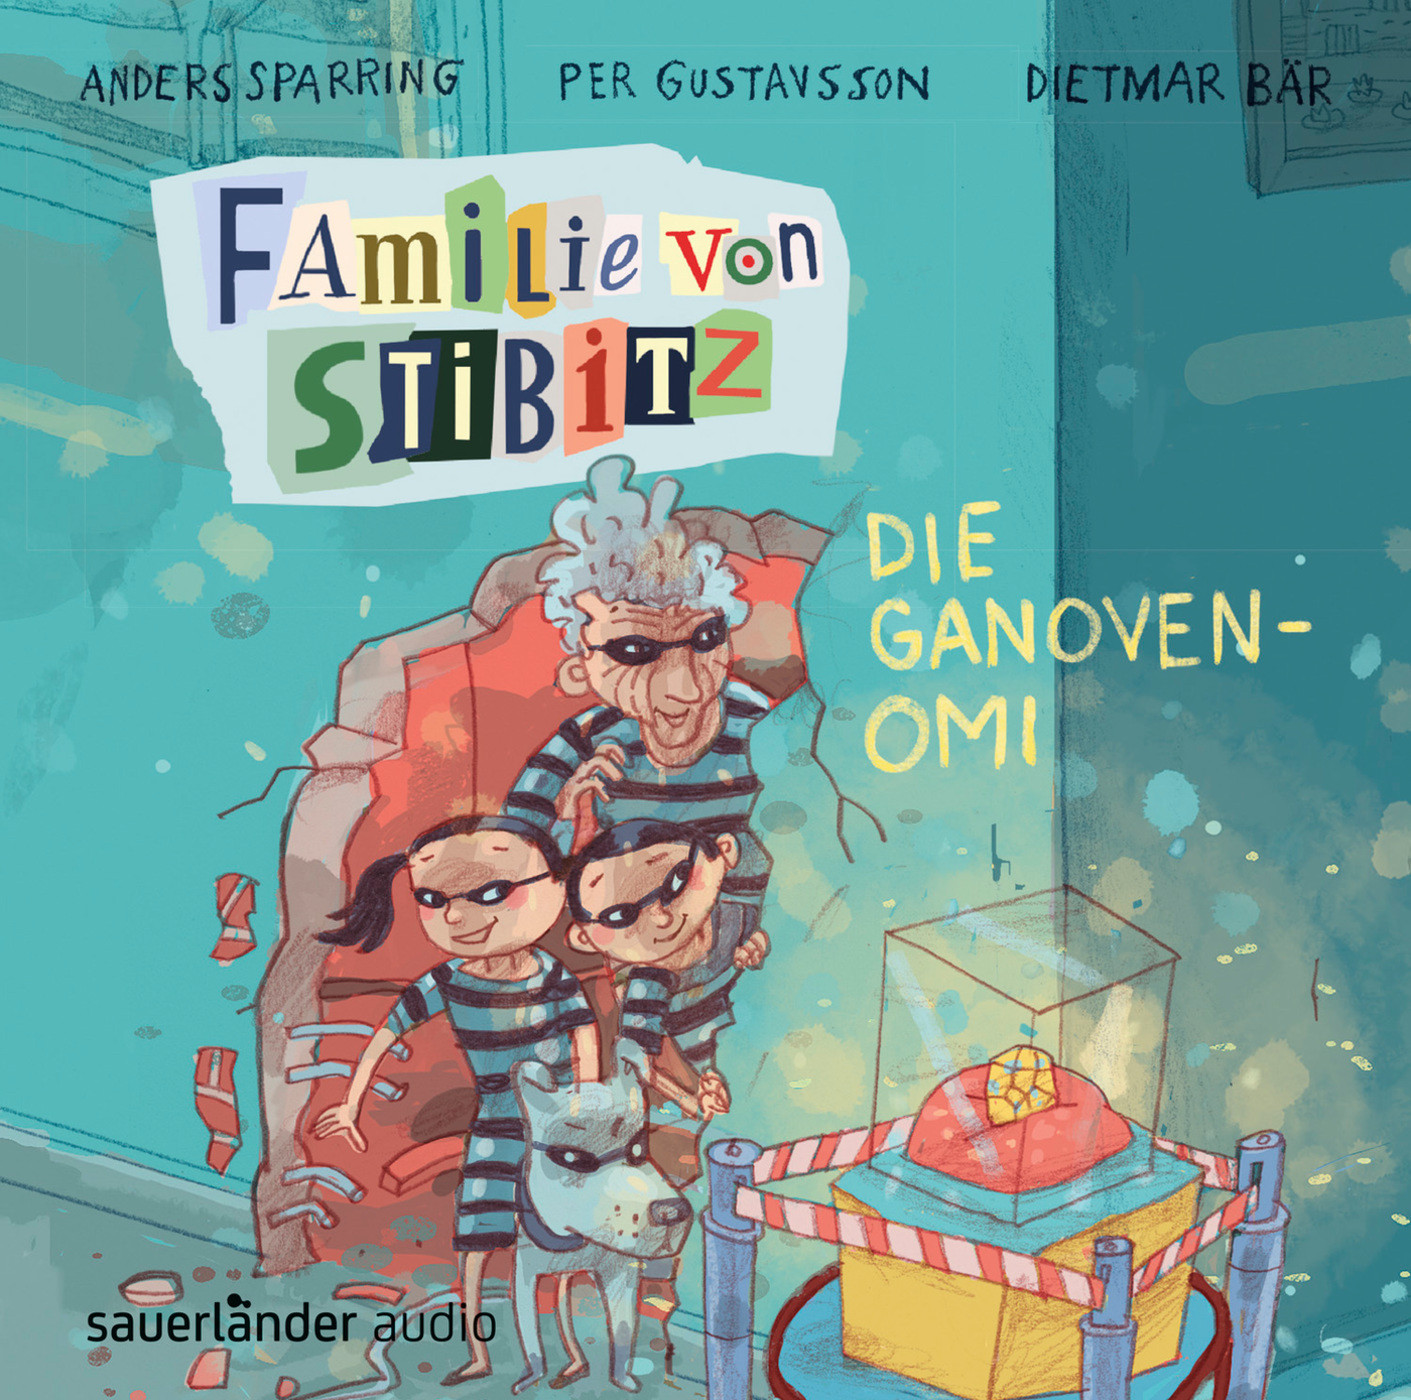 Anders Sparring - Familie von Stibitz - Die Ganoven-Omi